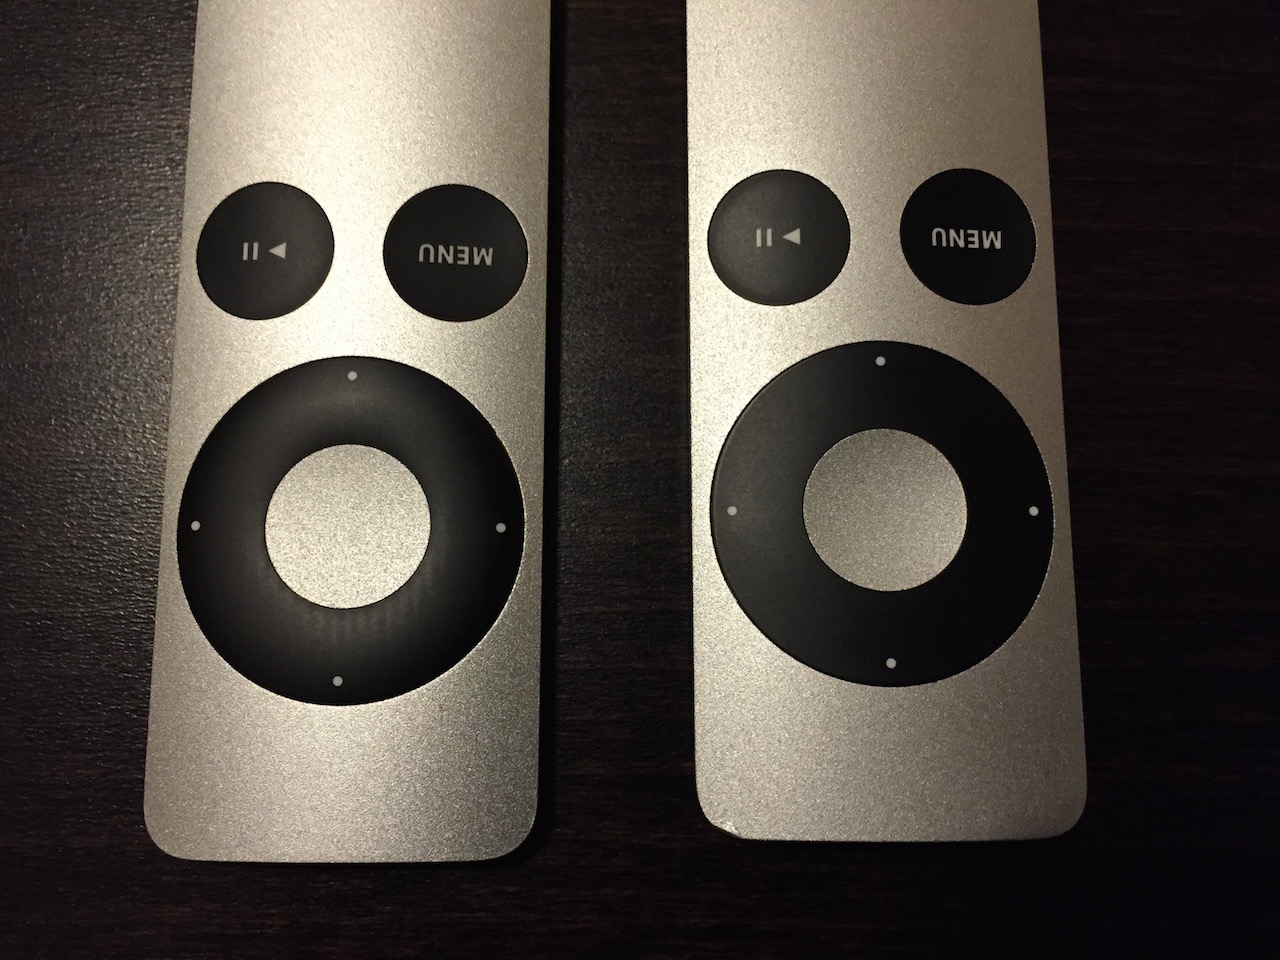 Die unterschiedlichen Apple Remote Fernbedienungen (links die neuere)